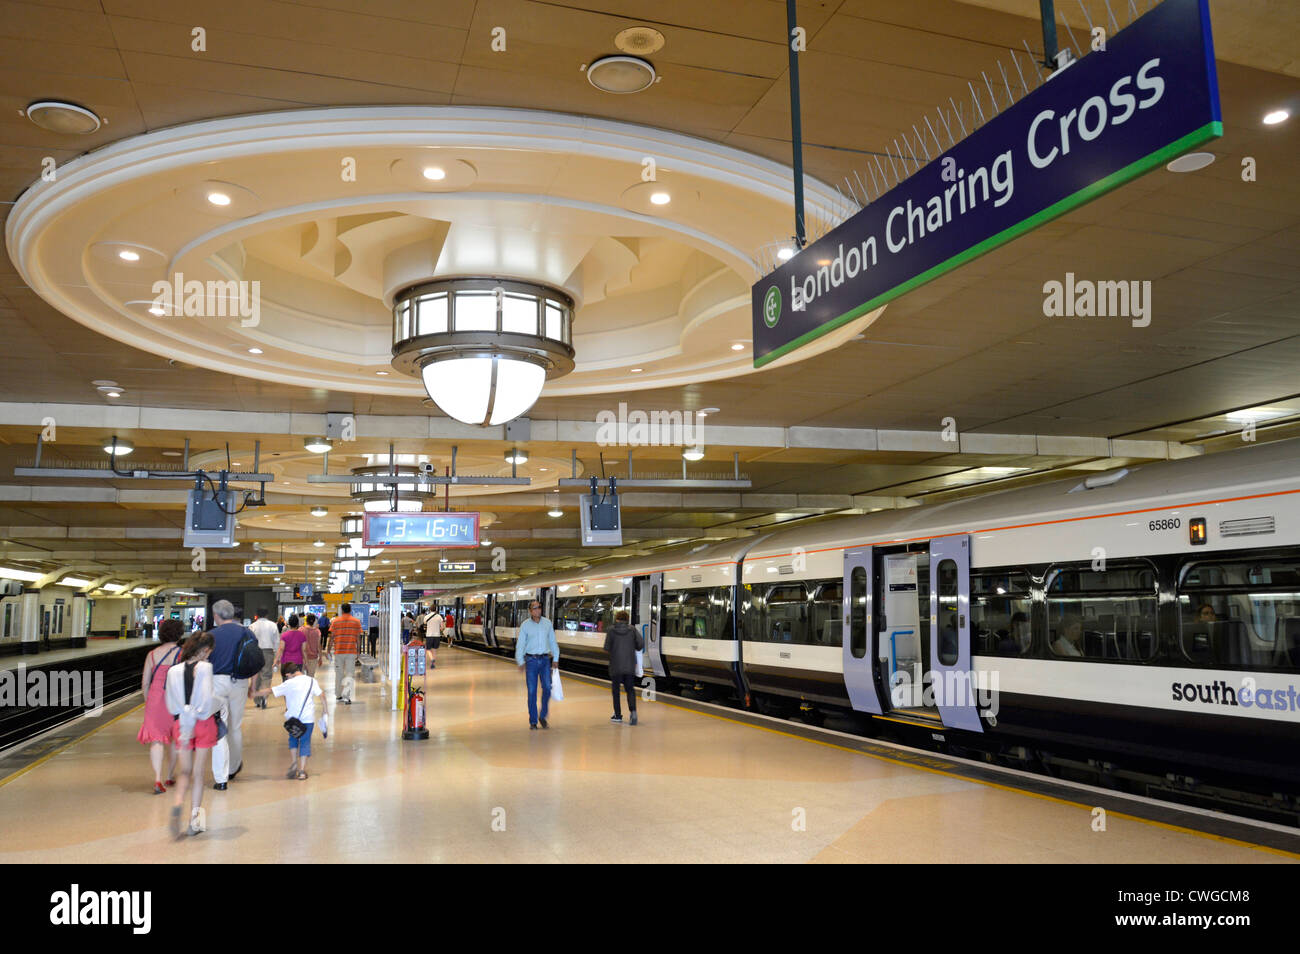 Familienpassagiere & Zug am Bahnhof London Charing Cross Plattform mit großer dekorativer Deckenbeleuchtung und Schild London England GB Stockfoto